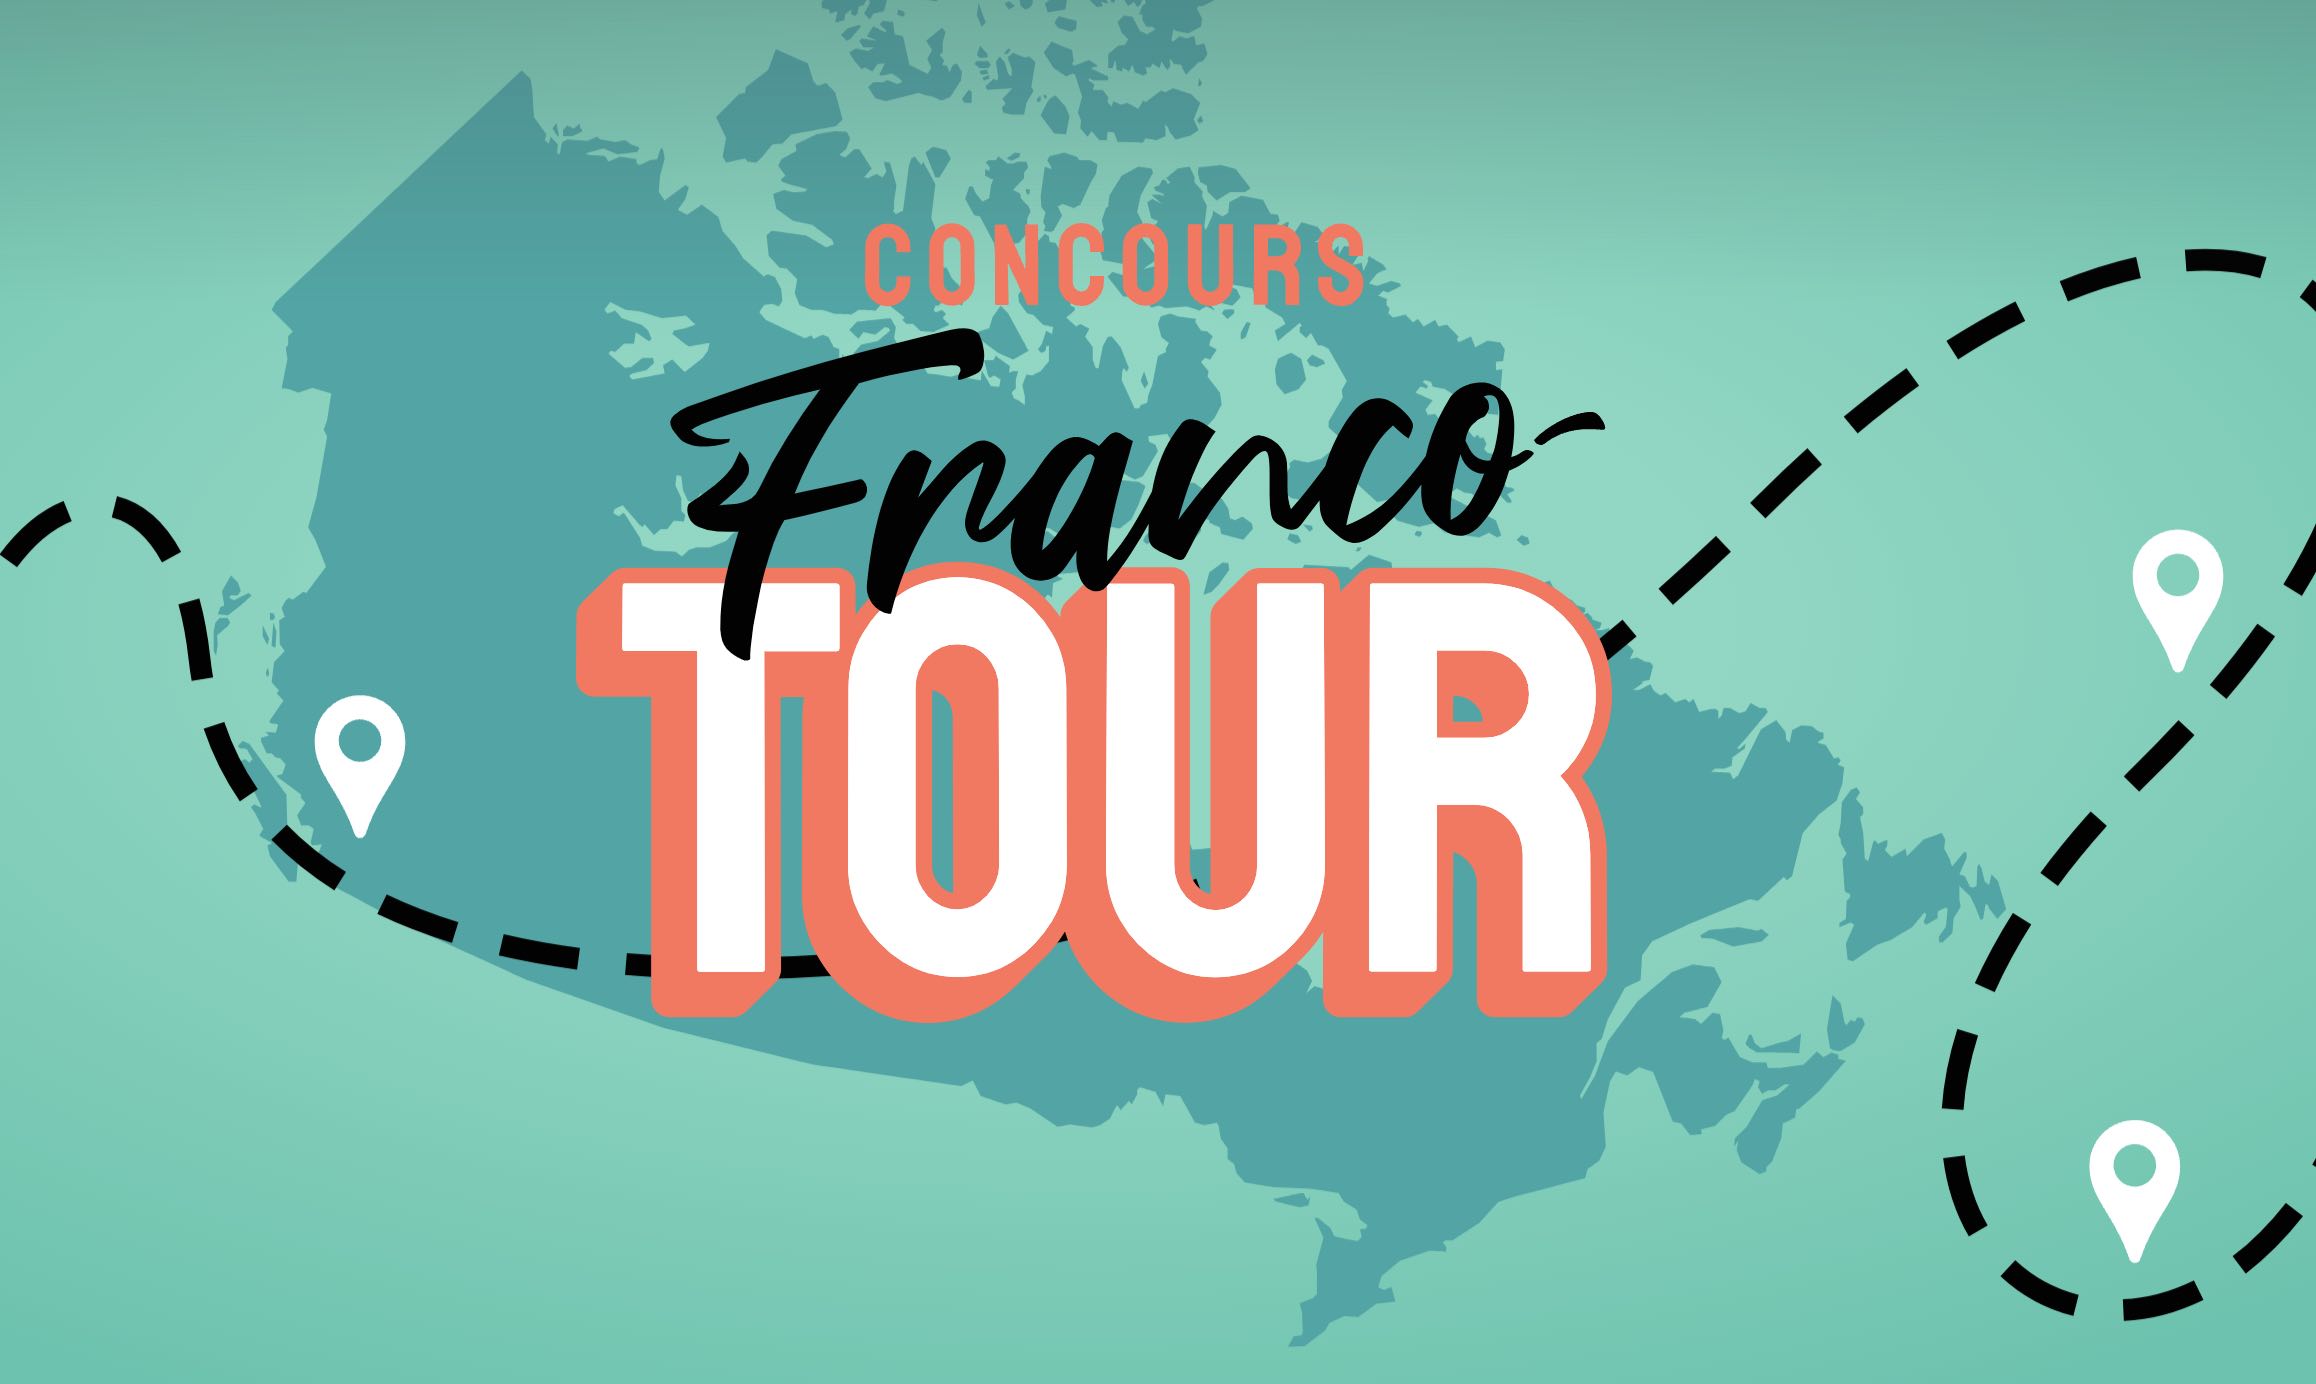 Concours Franco-Tour. (photo : gracieuseté RVF)